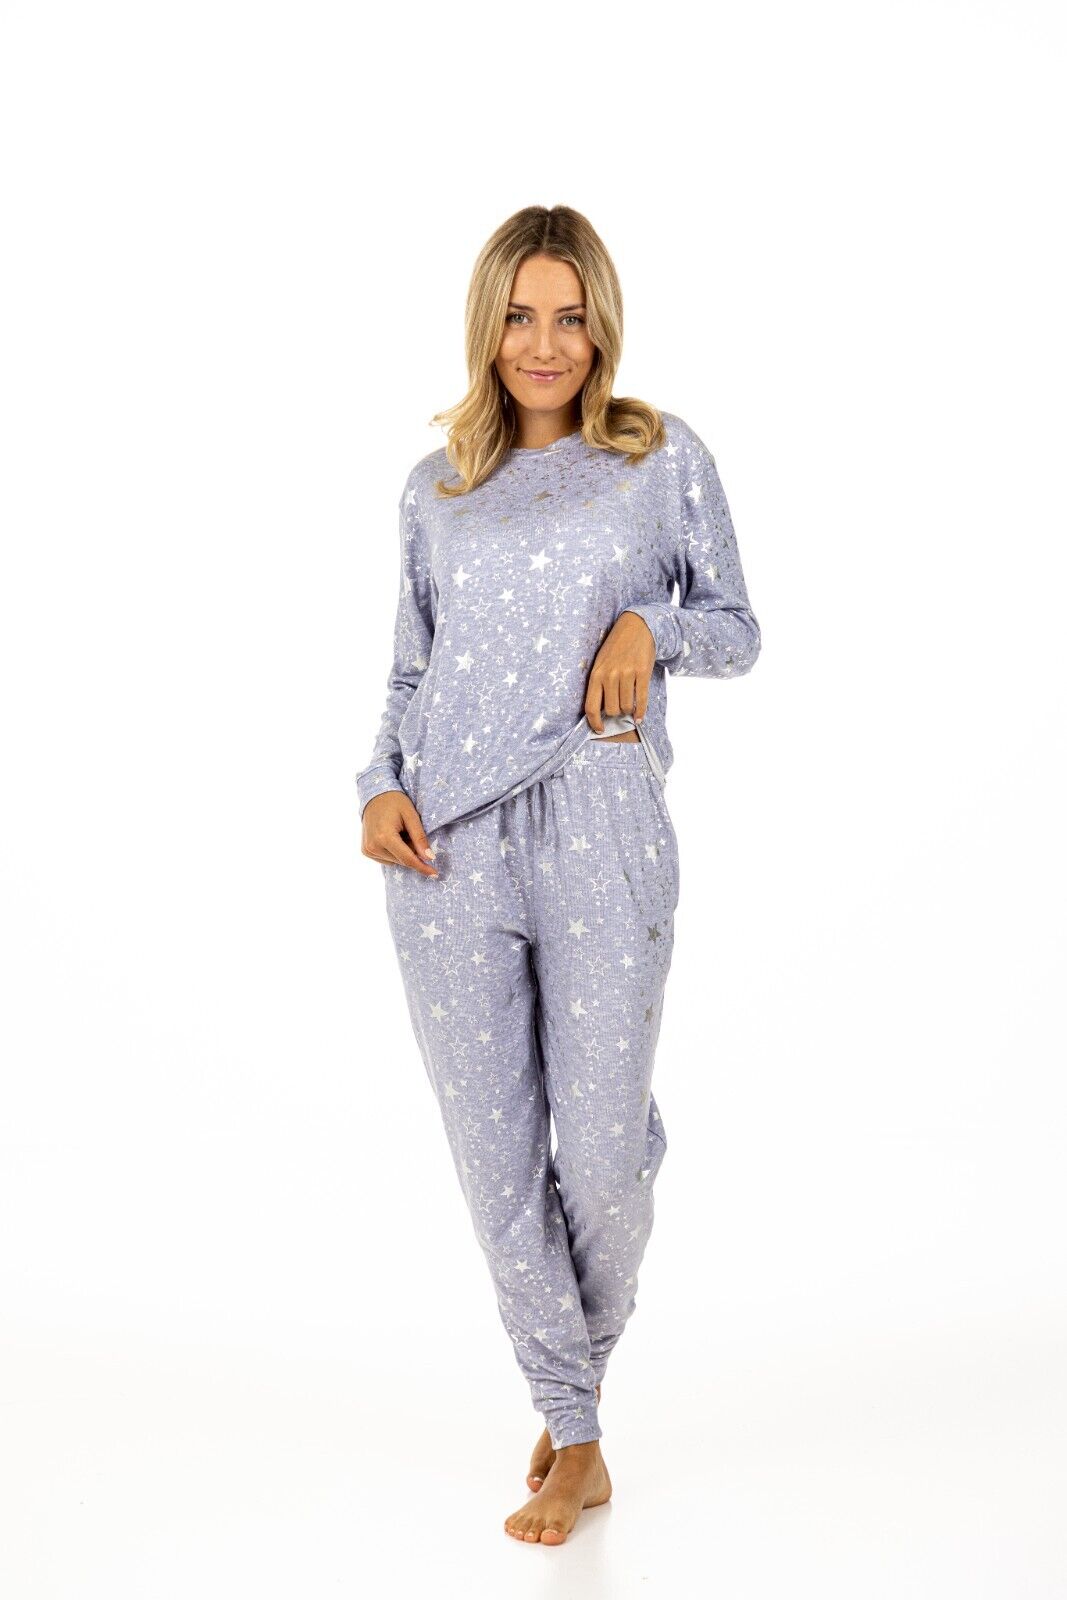 Turtle Pyjama Set Dusky Blue Star Foil Women Nightwear – Turtle Clothing  Haddow